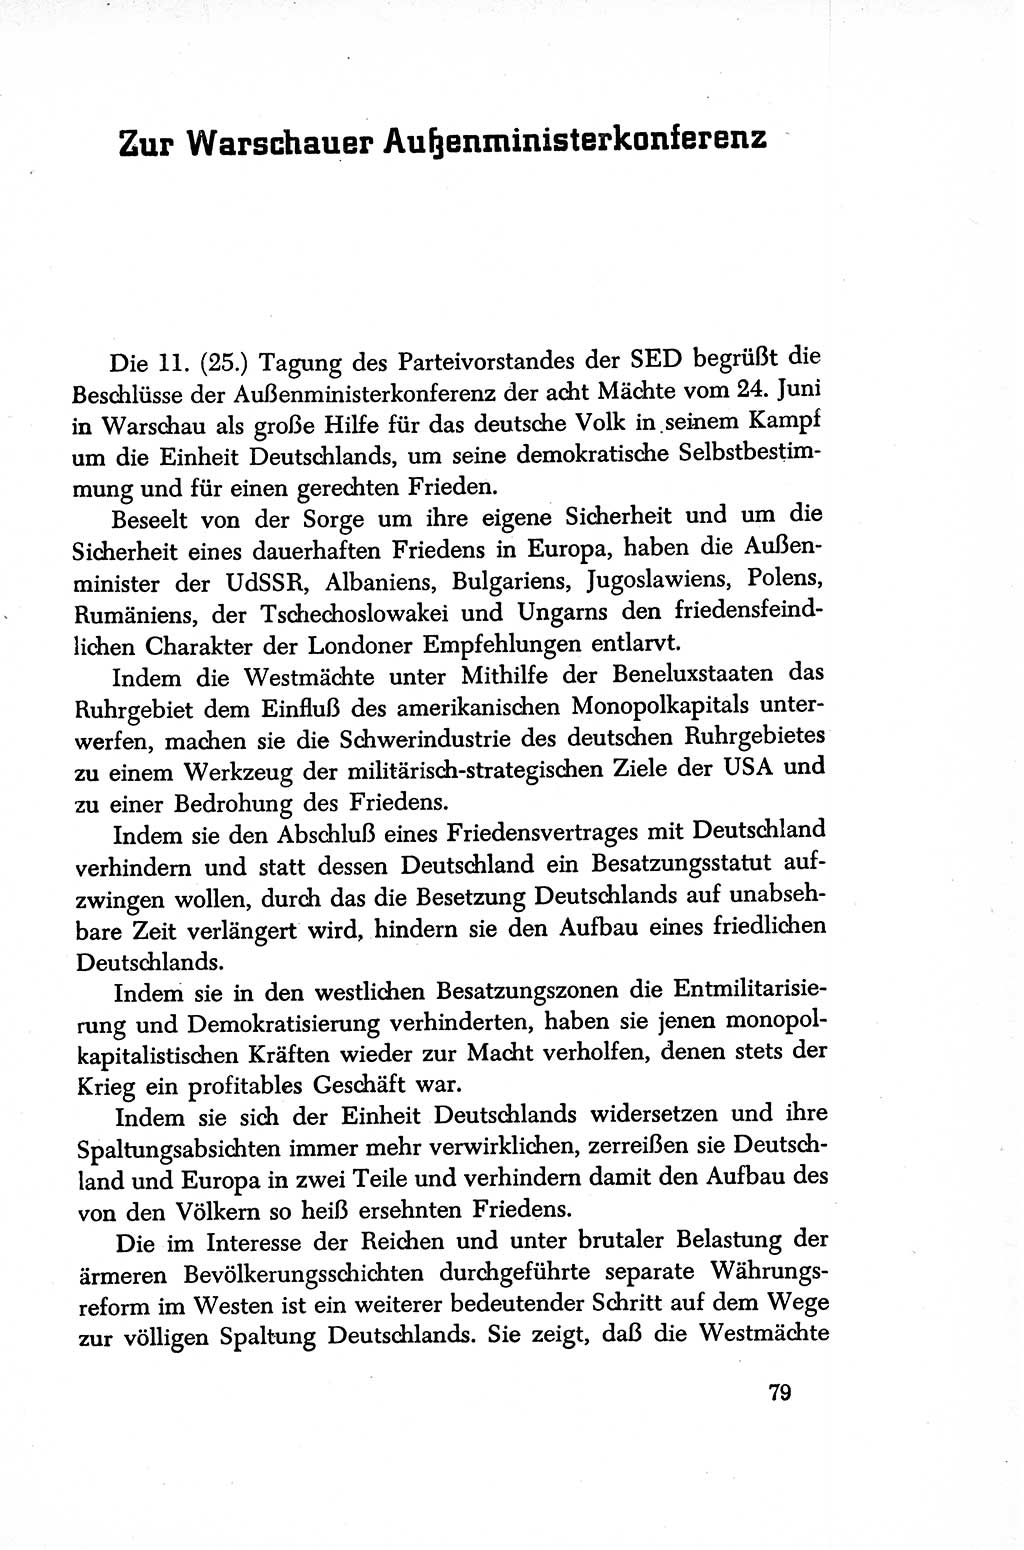 Dokumente der Sozialistischen Einheitspartei Deutschlands (SED) [Sowjetische Besatzungszone (SBZ) Deutschlands/Deutsche Demokratische Republik (DDR)] 1948-1950, Seite 79 (Dok. SED SBZ Dtl. DDR 1948-1950, S. 79)